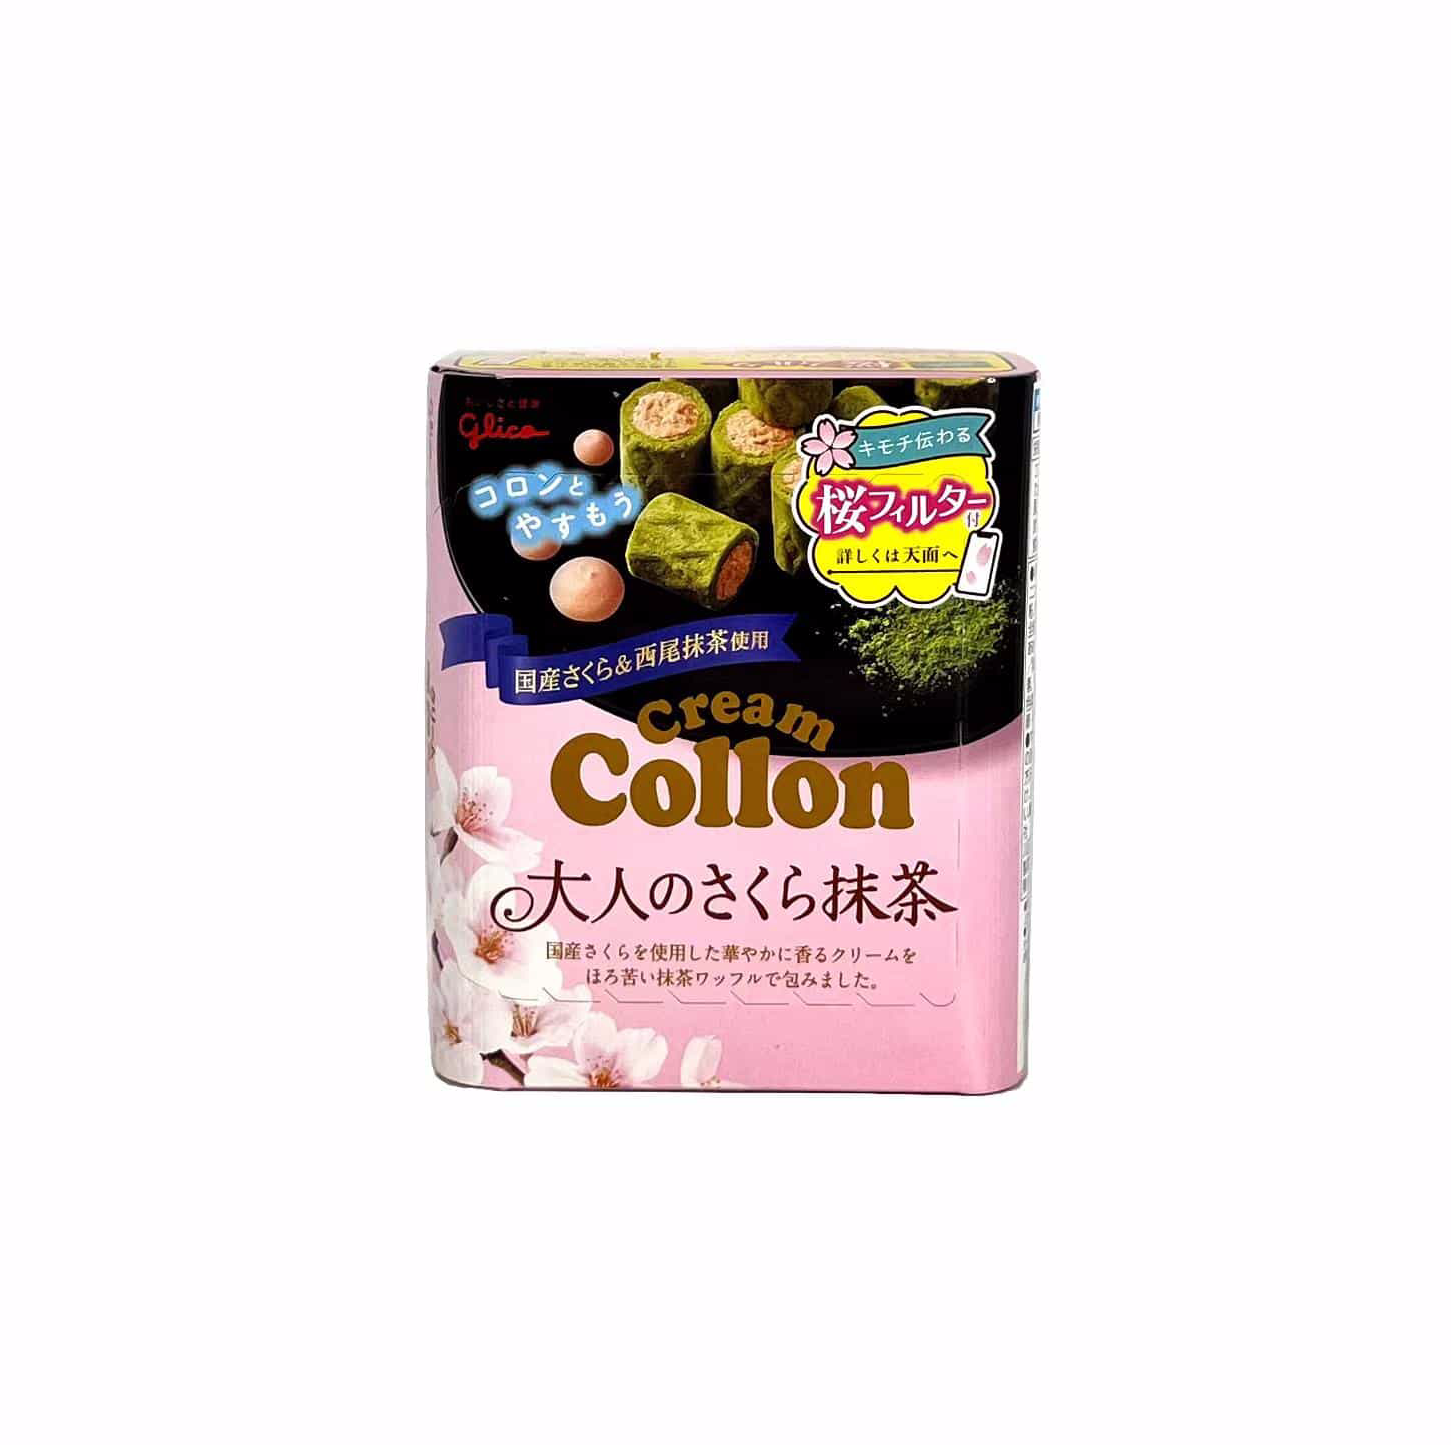 Cream Collon 饼干卷 樱花抹茶味 48g Glico 日本